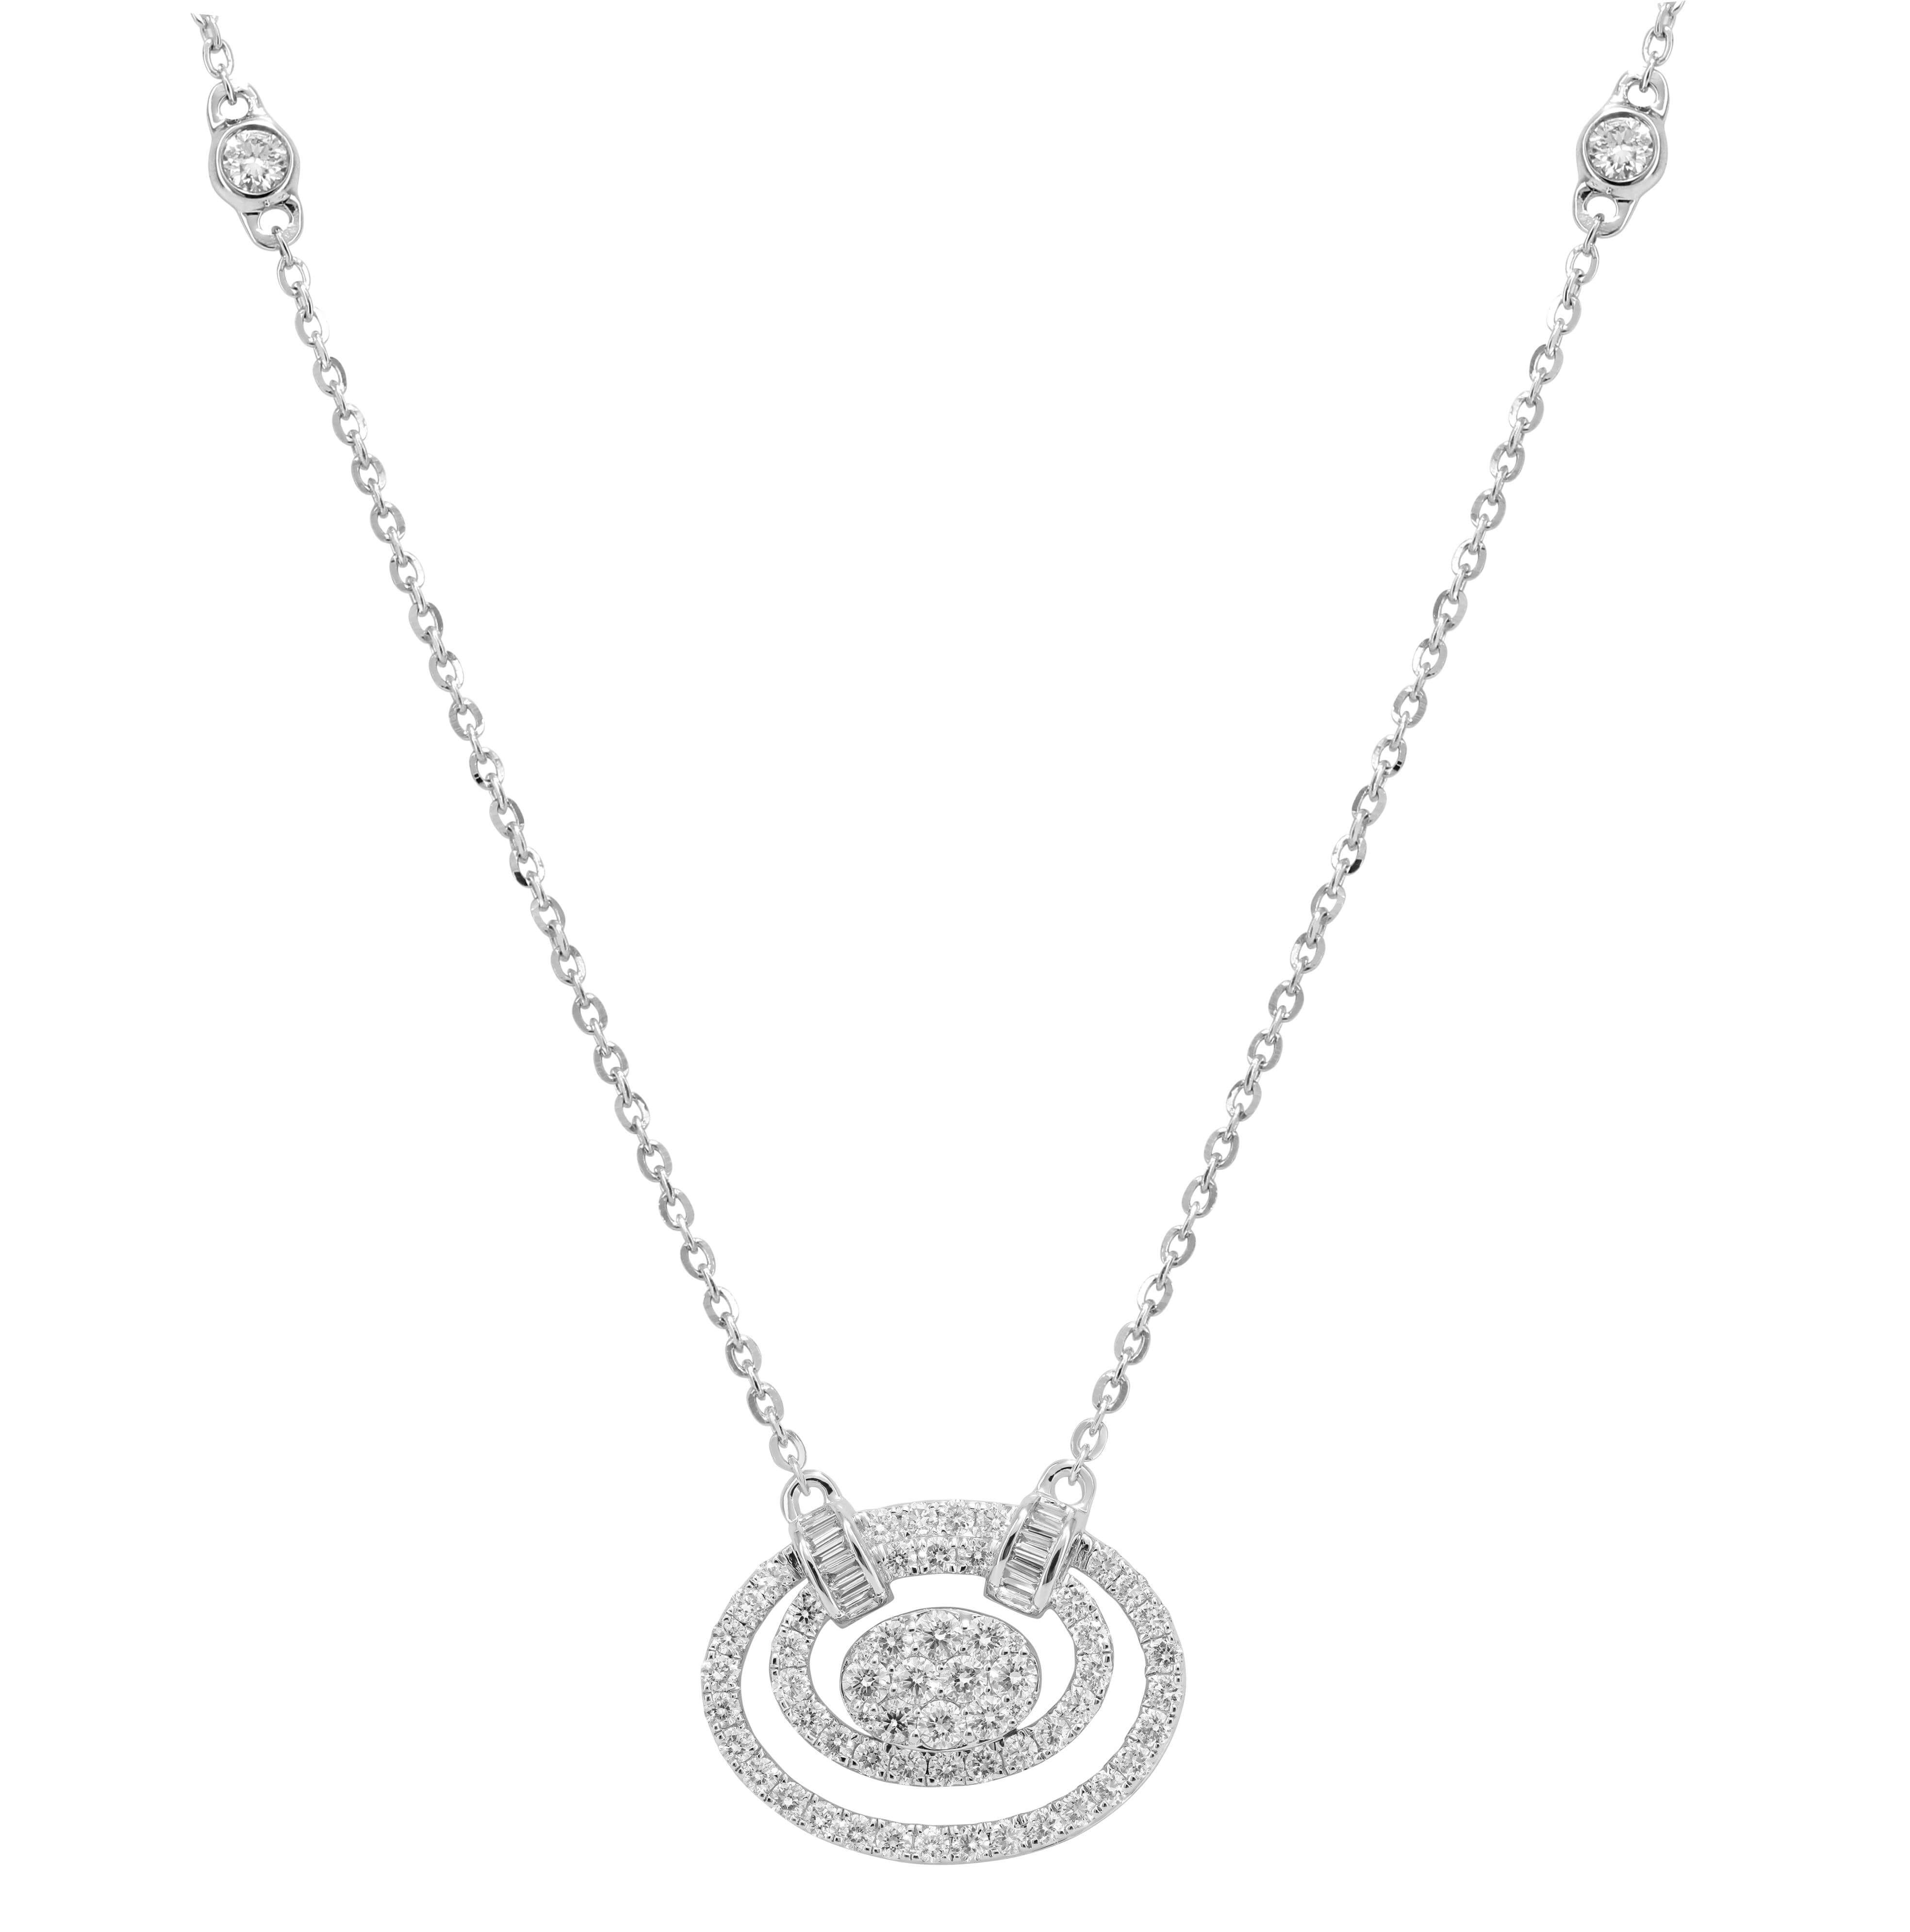 8607NW

Colier pretios din aur alb de 18K cu model in forma de spirala, incrustat cu diamante